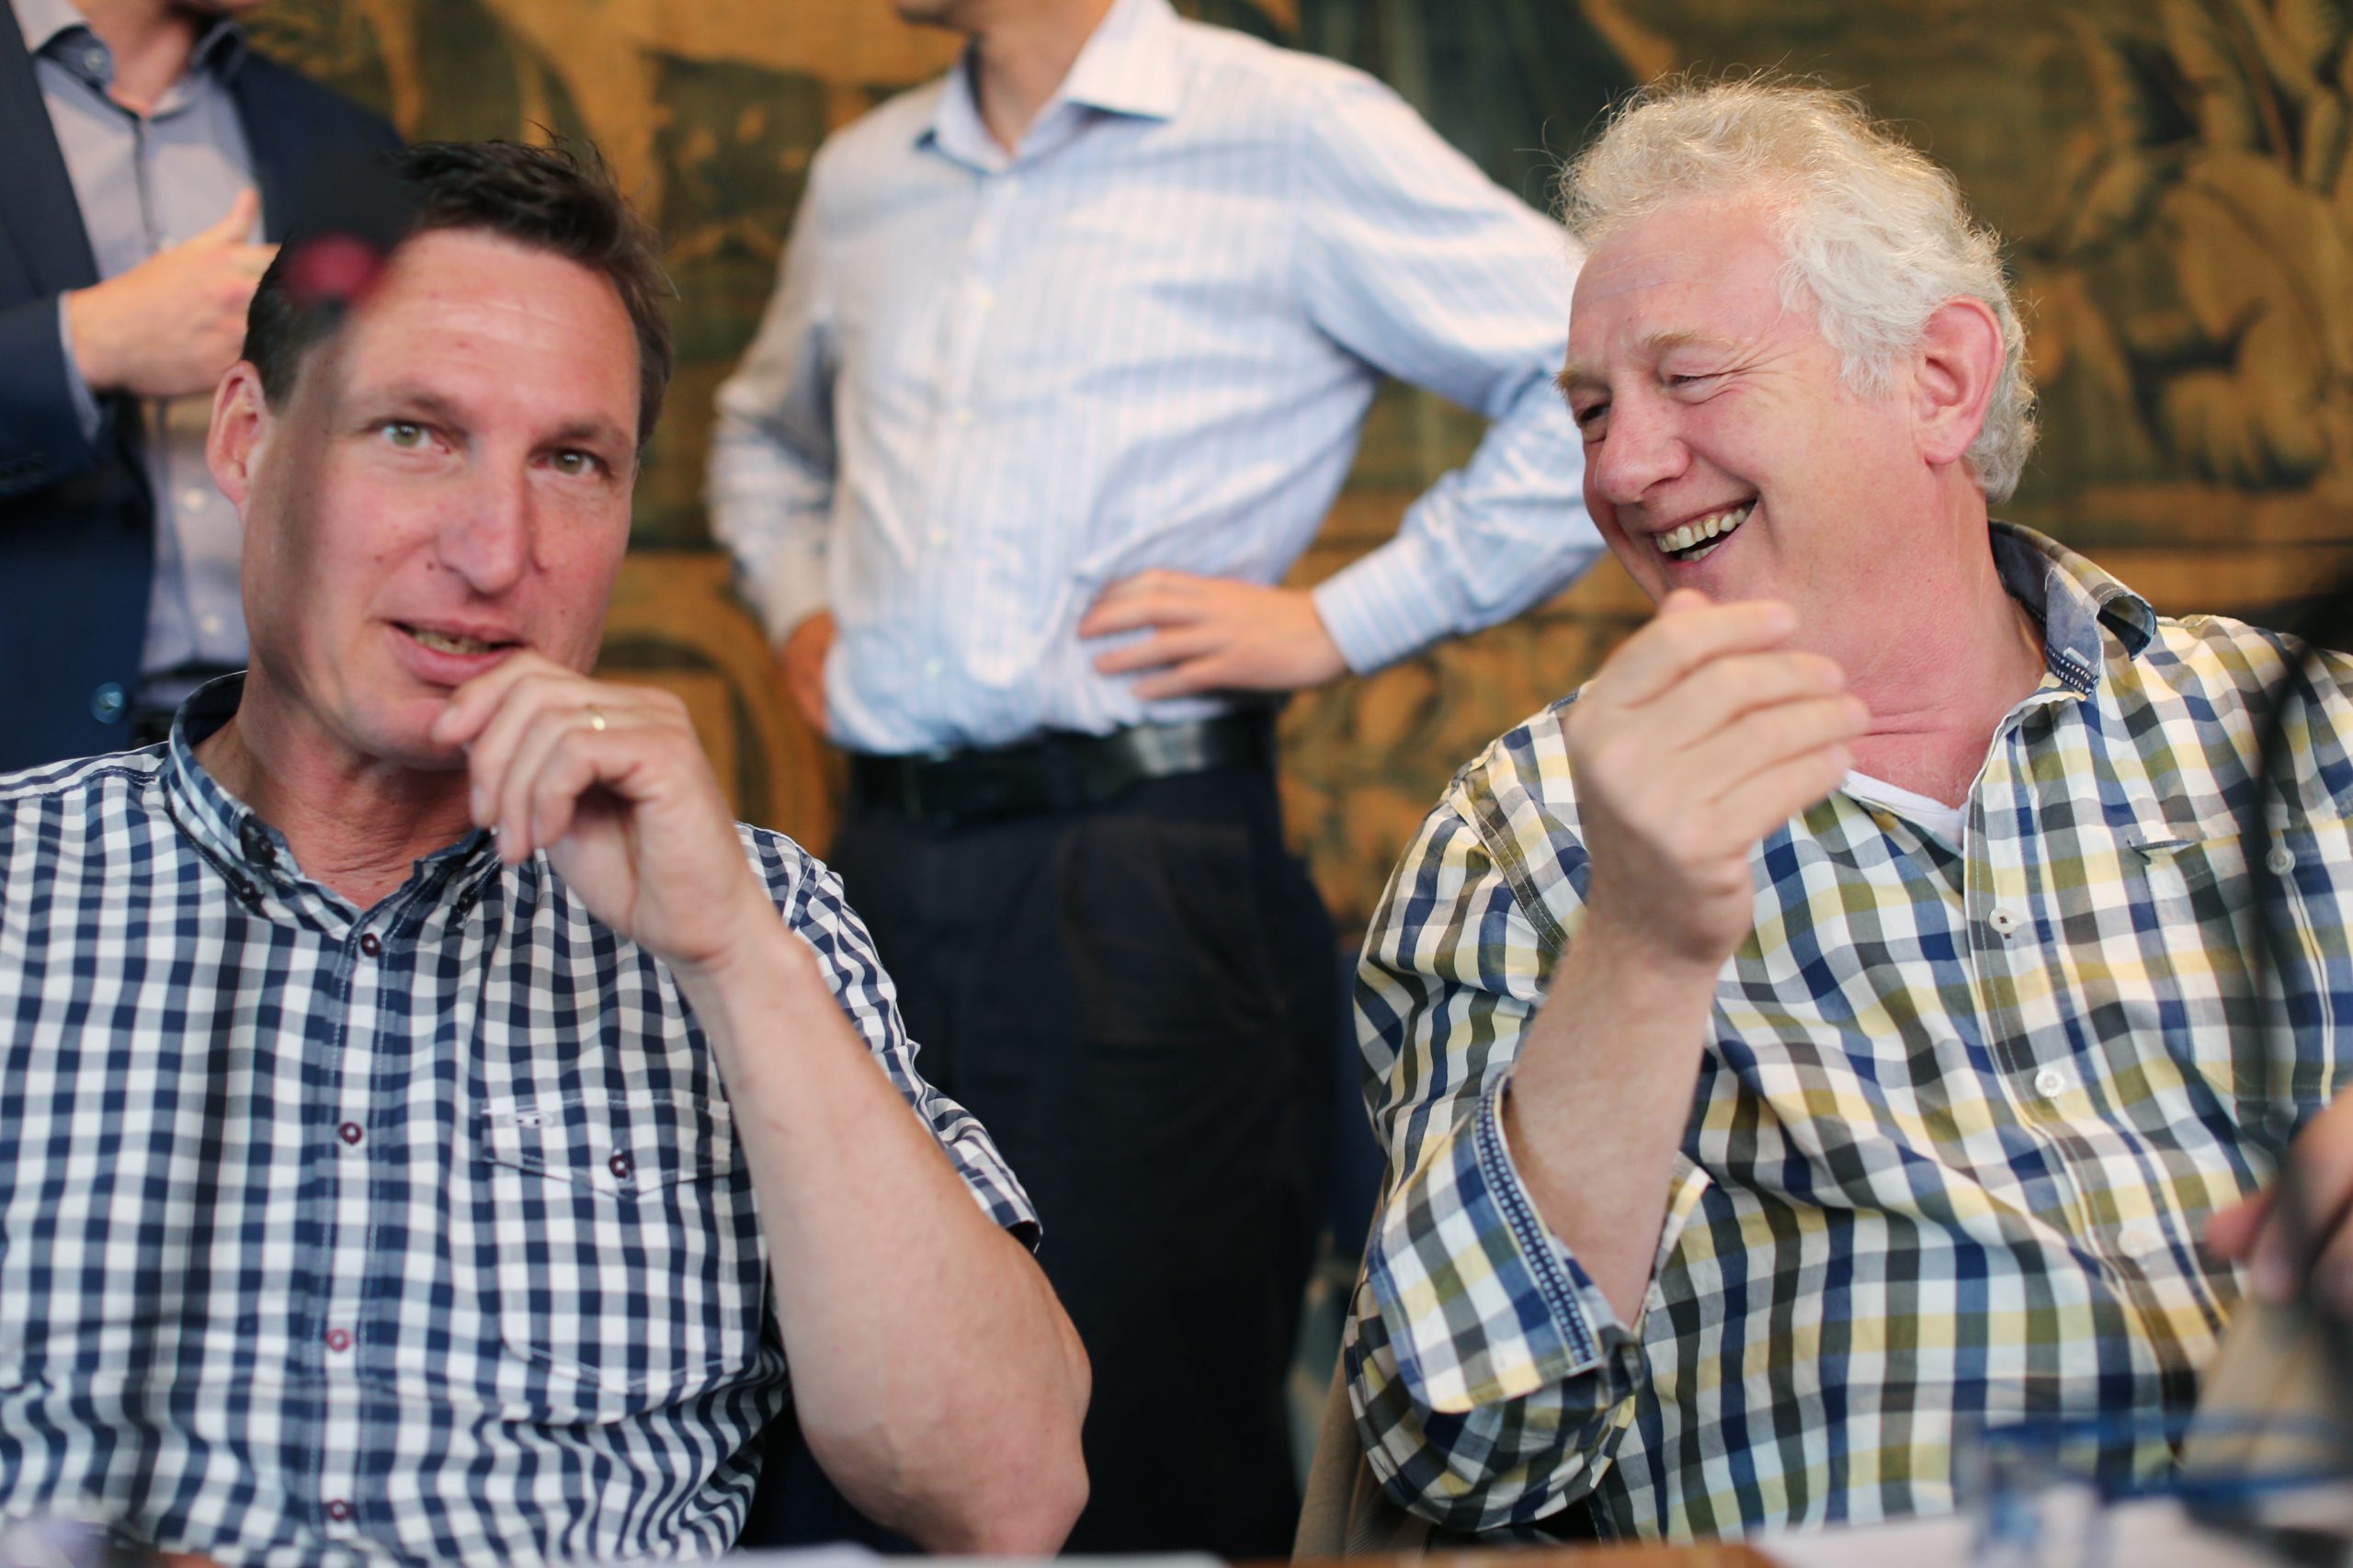 Verbroederen tijdens de Schelderaad: twee raadsleden lachen samen om een grap.